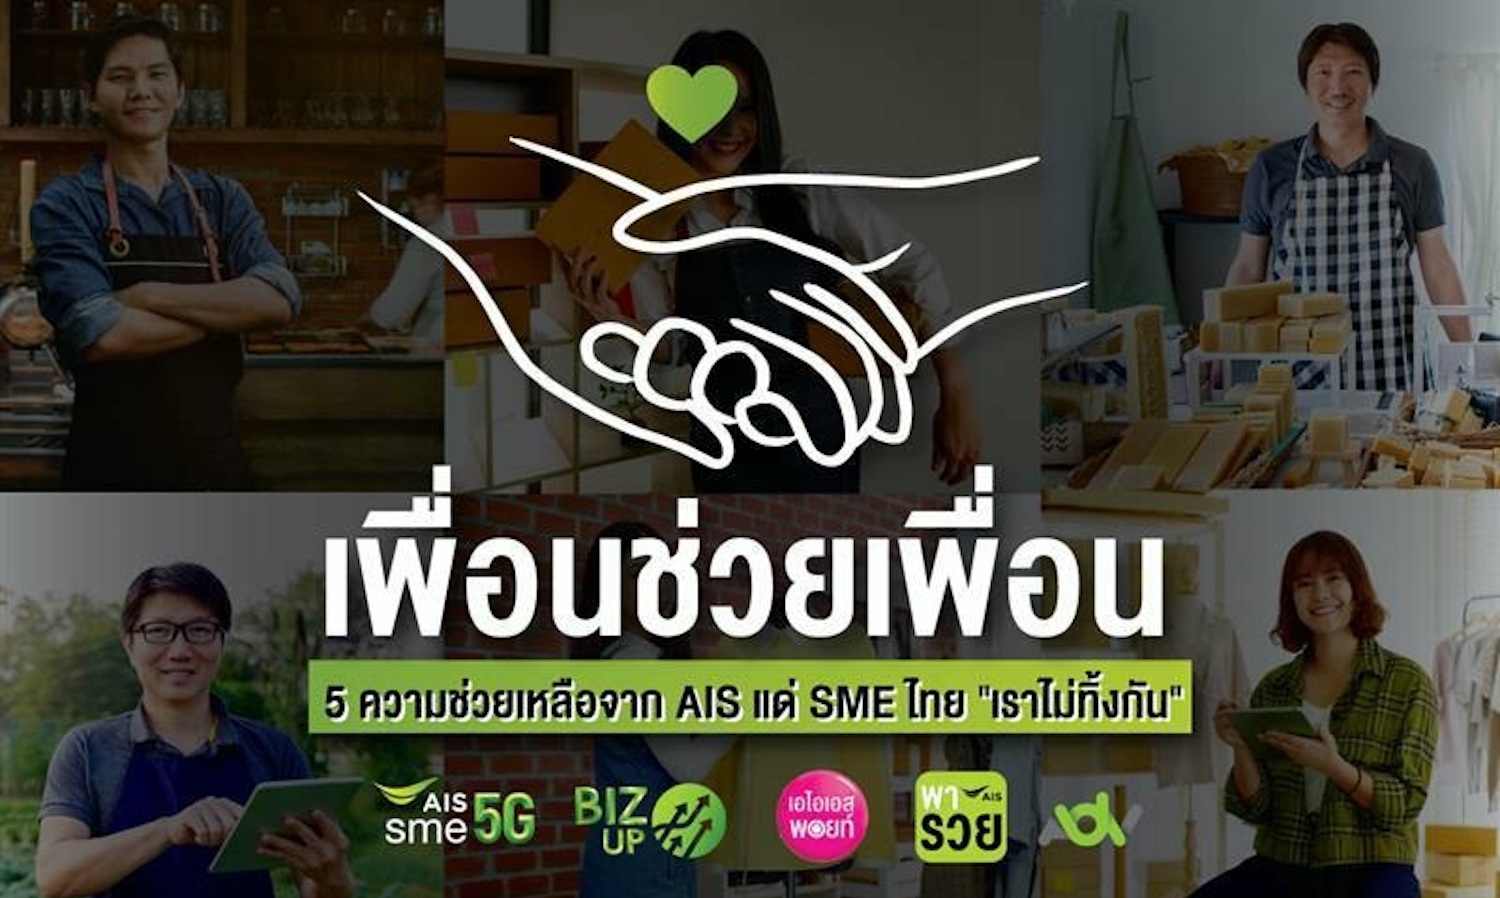 AIS จัหนุน SME ไทย เปิดโครงการ เพื่อนช่วยเพื่อน 5 ความช่วยเหลือจาก AIS  แด่ SME ไทย เราไม่ทิ้งกัน